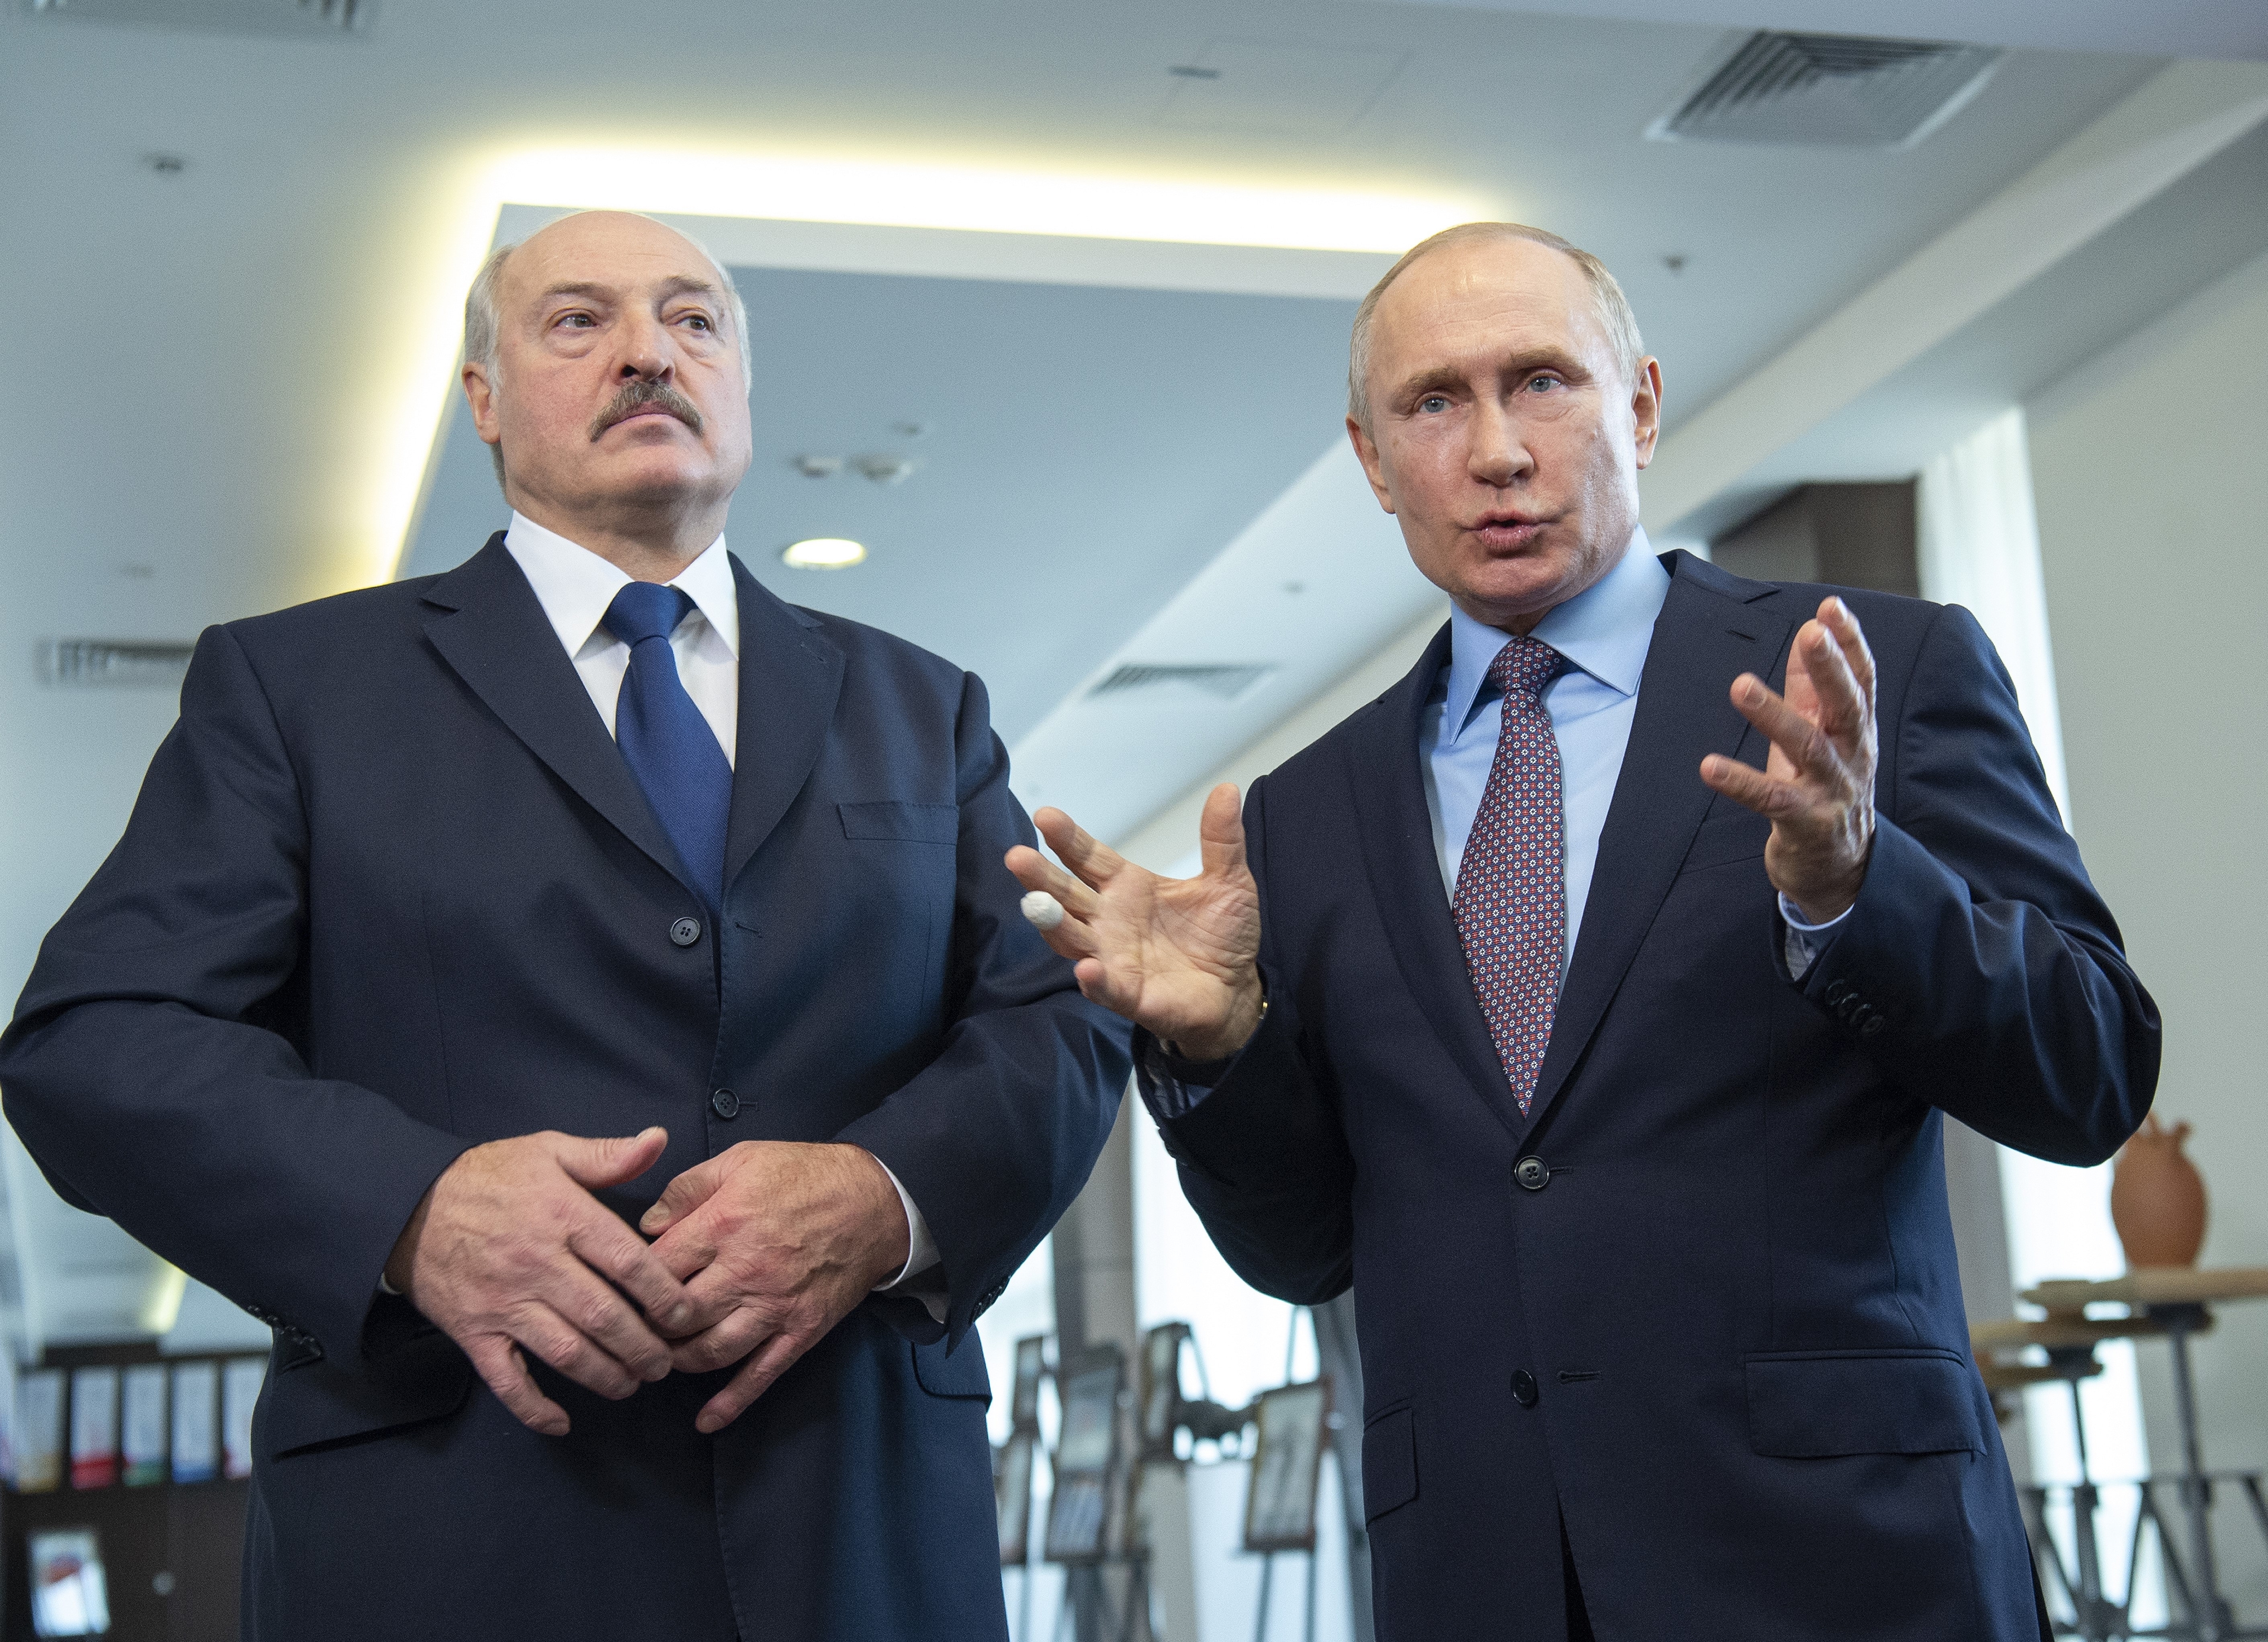 Alexander Lukashenko y Vladimir Putin, aliados políticos e inseparables. El presidente ruso dijo que ayudaría a permanecer en el poder al dictador bielorruso (Europa Press)